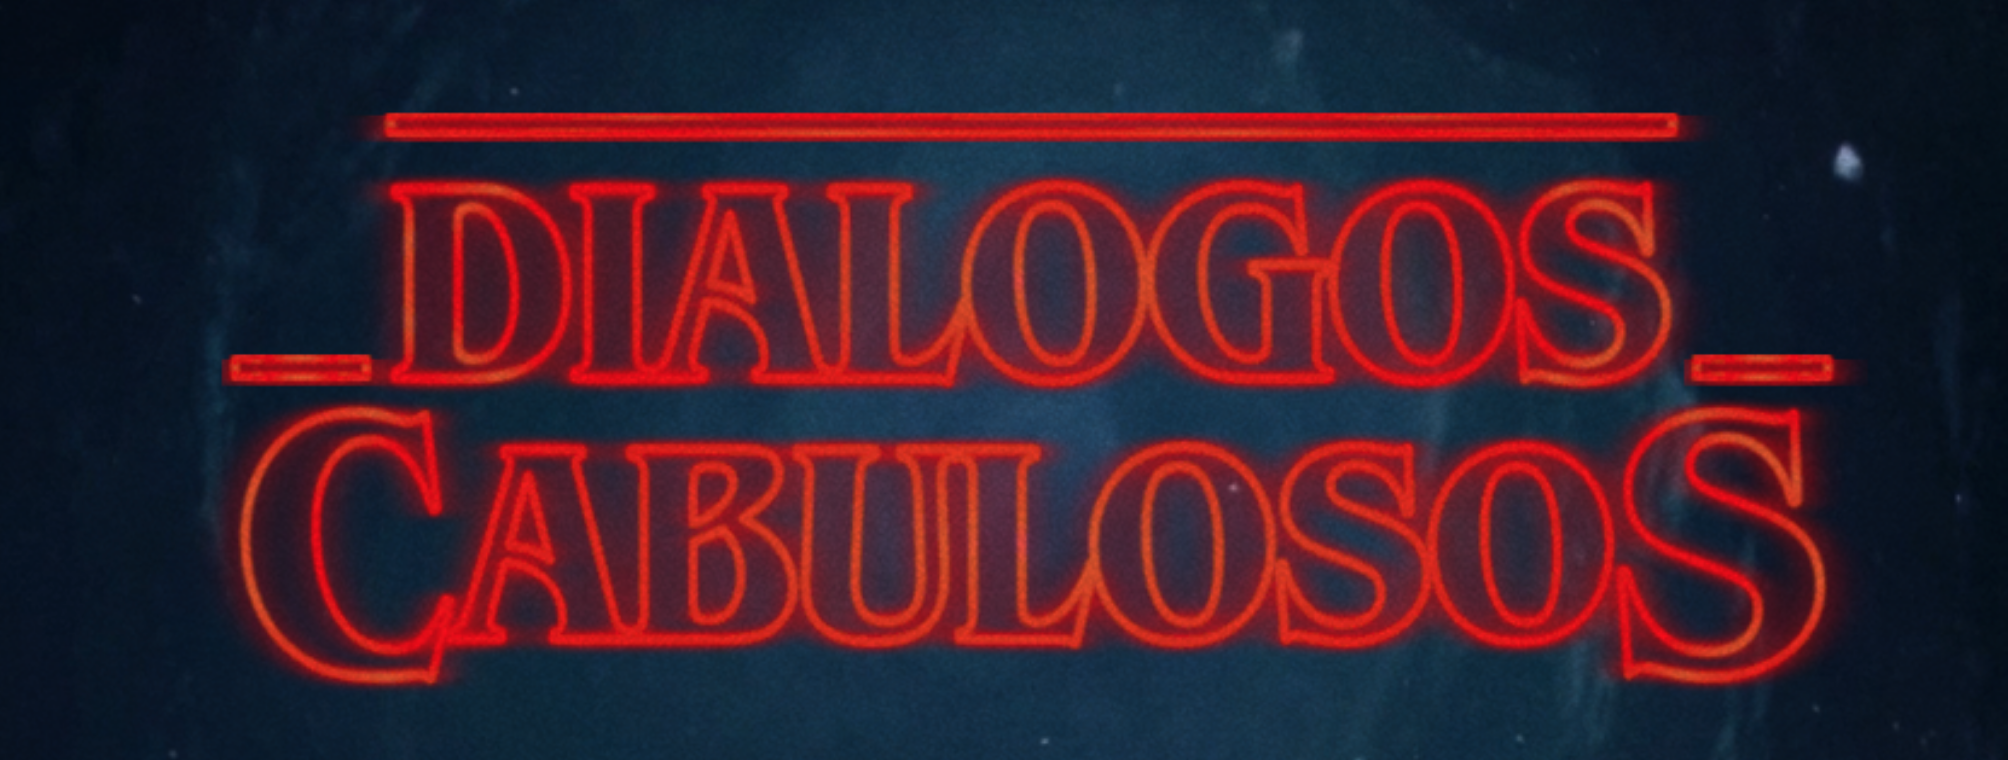 O Melhor do Twitter: Diálogos Cabulosos edition